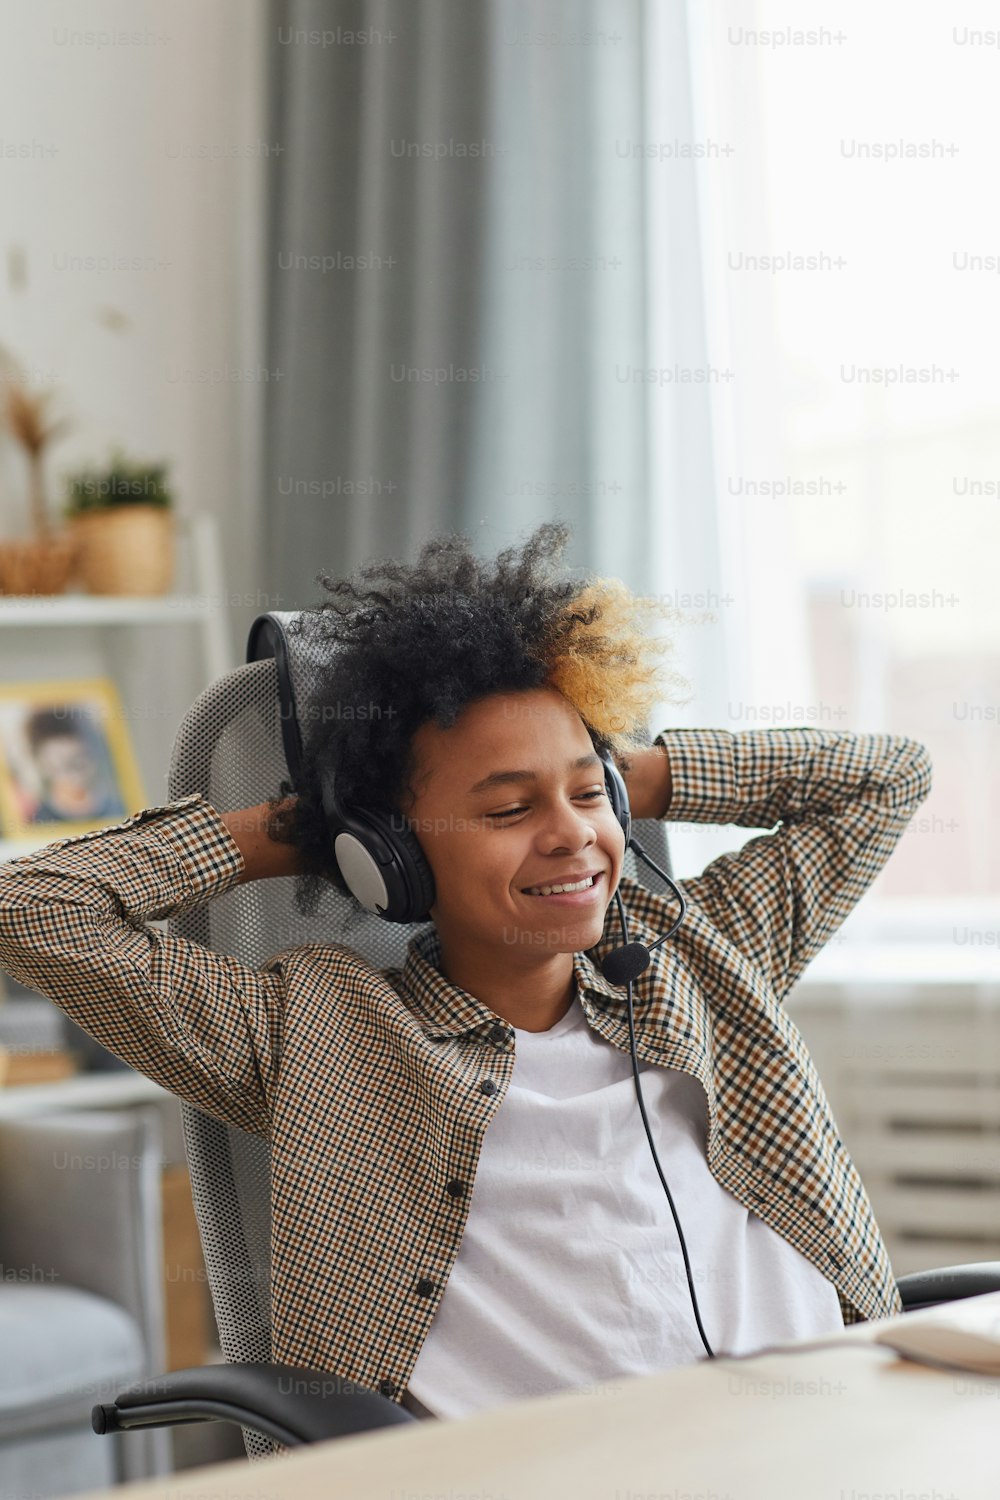 Retrato vertical de un niño afroamericano sonriente con auriculares y relajándose en la silla mientras usa una computadora portátil en casa, concepto de jugador o blogger